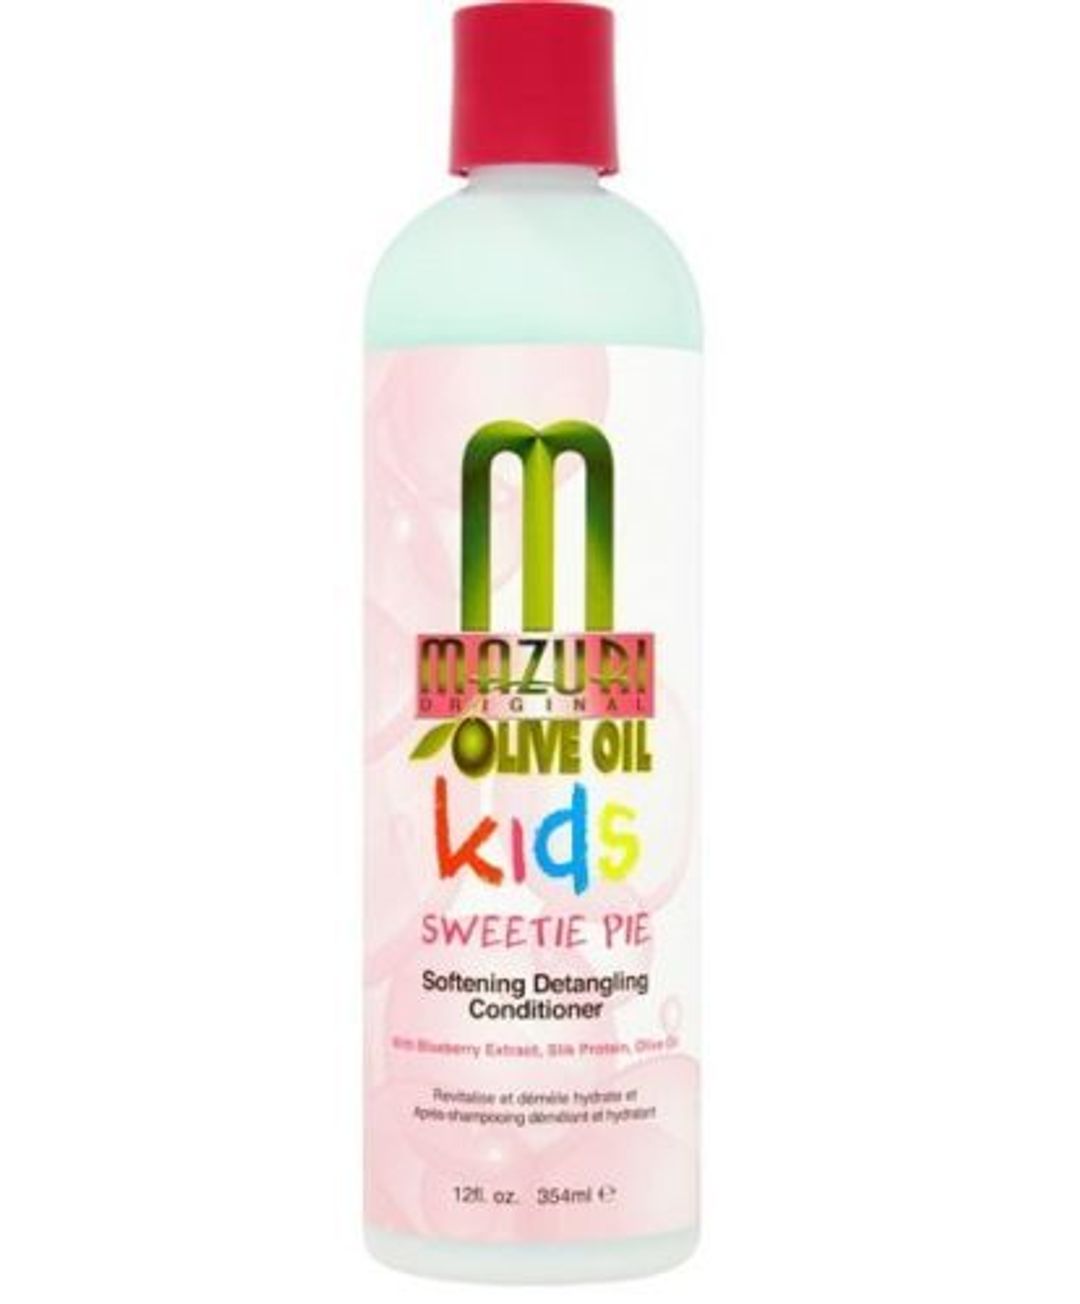 Mazuri Kids Sweetie Pie Softening Detangling Conditioner - 12oz